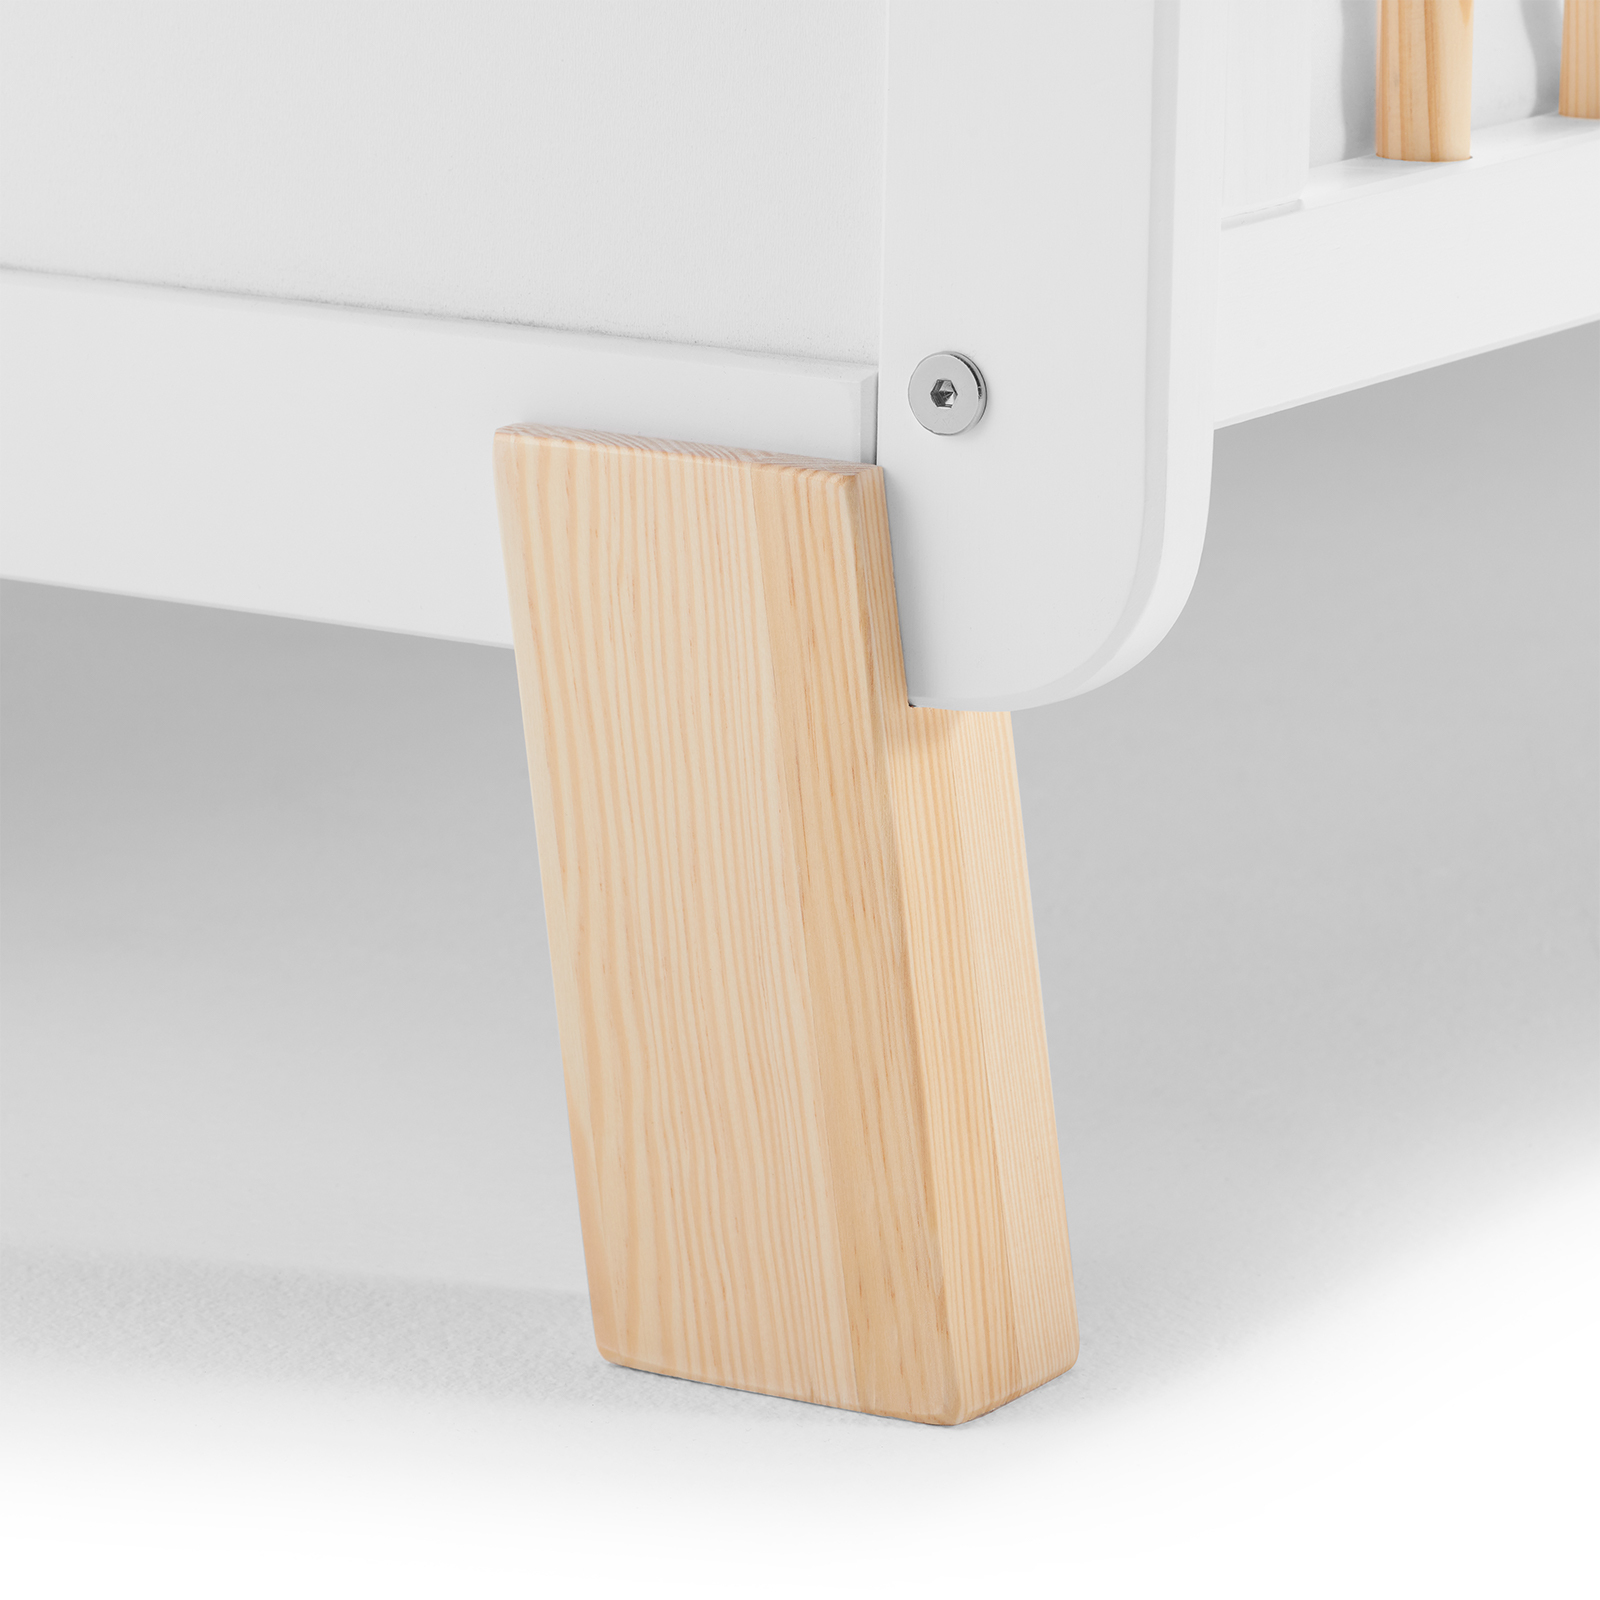 Дървено креватче KinderKraft NICO с матрак, Бяло